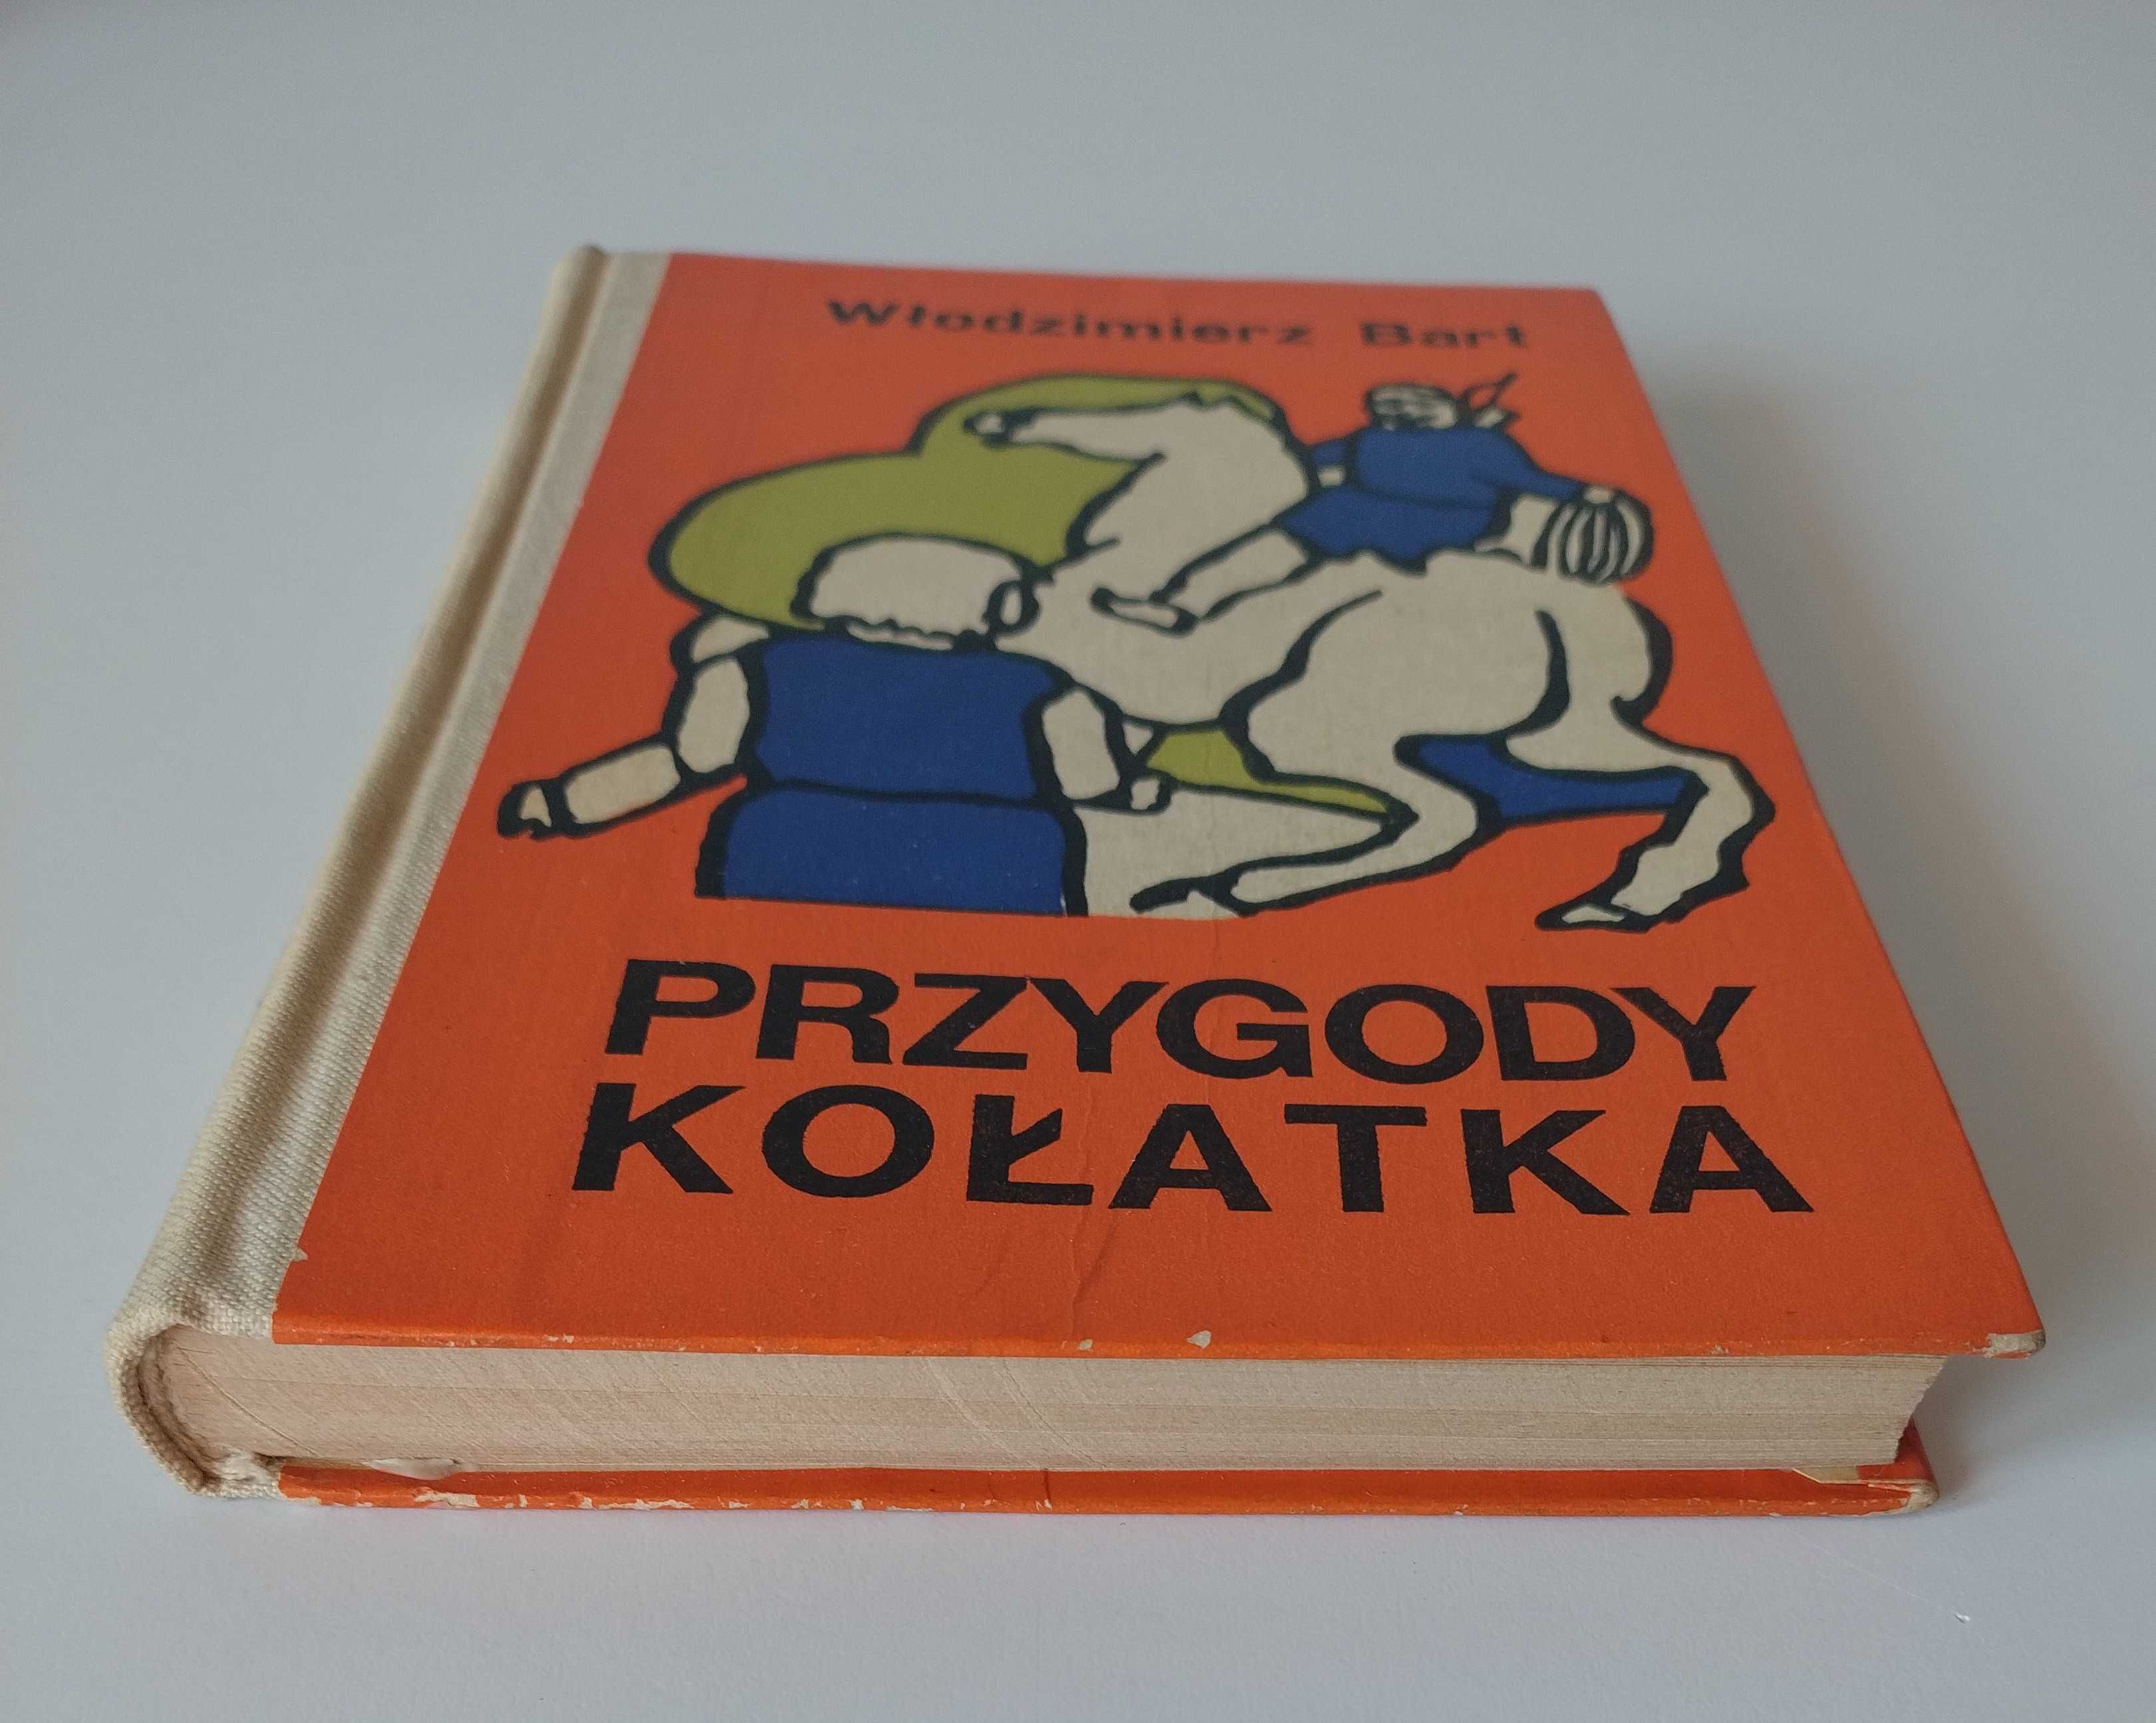 Włodzimierz Bart Przygody Kołatka 1970 książka stare książki bajki PRL